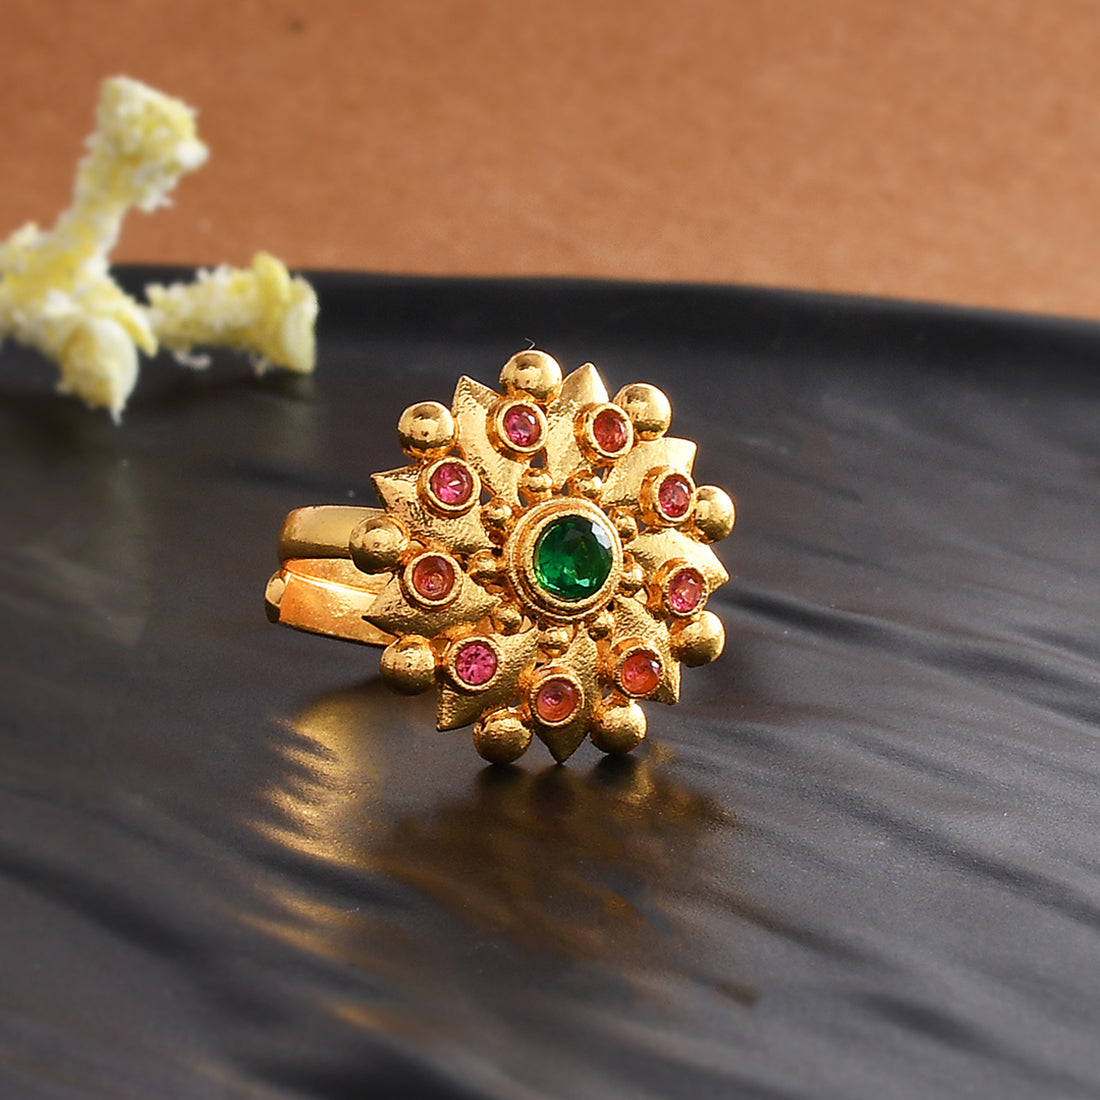 Tricolor 10k Gold Cocktail Ring from Brazil - Tricolor Diamonds | NOVICA